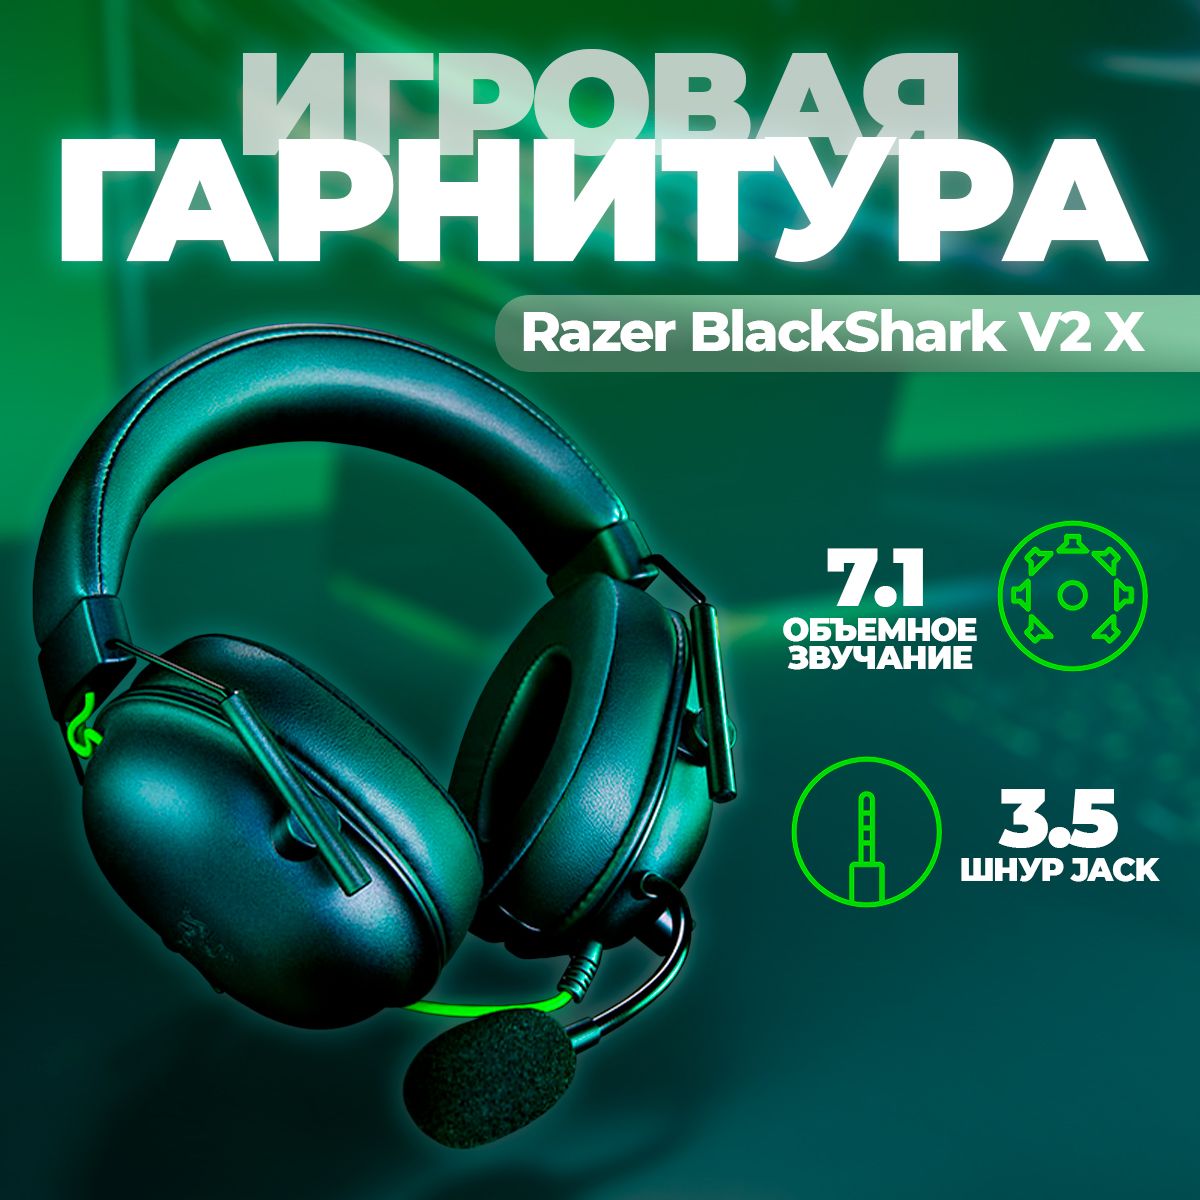 Наушники для компьютера Razer Blackshark V2 X Black, купить в Москве, цены в интернет-магазинах на Мегамаркет